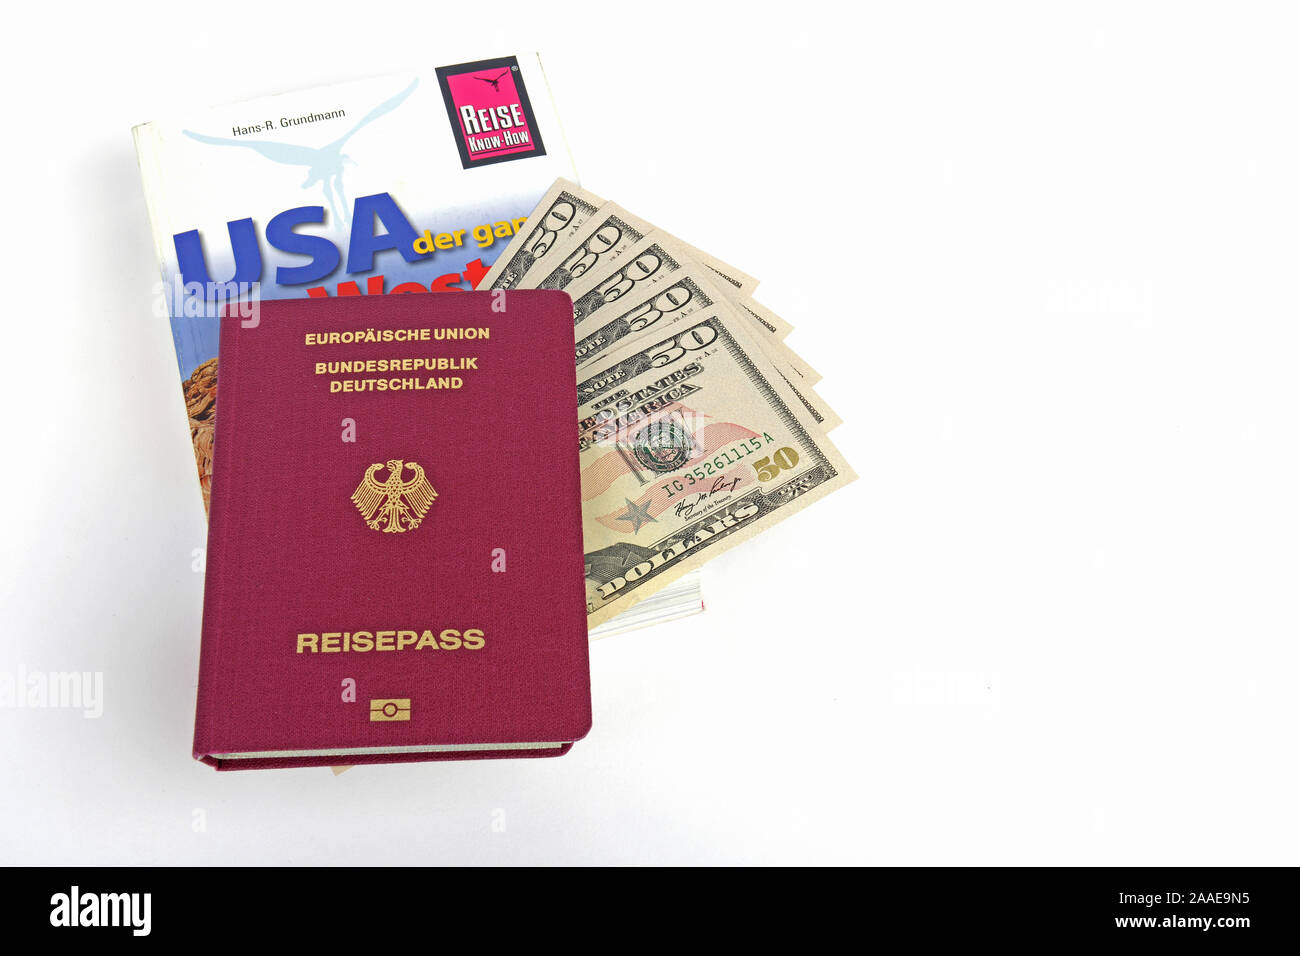 Reiseführer USA, Südwesten, Reisepass Bundesrepublik Deutschland, mehrere 50 Dollarscheine, Symbolbild Reisenplanung USA Stock Photo